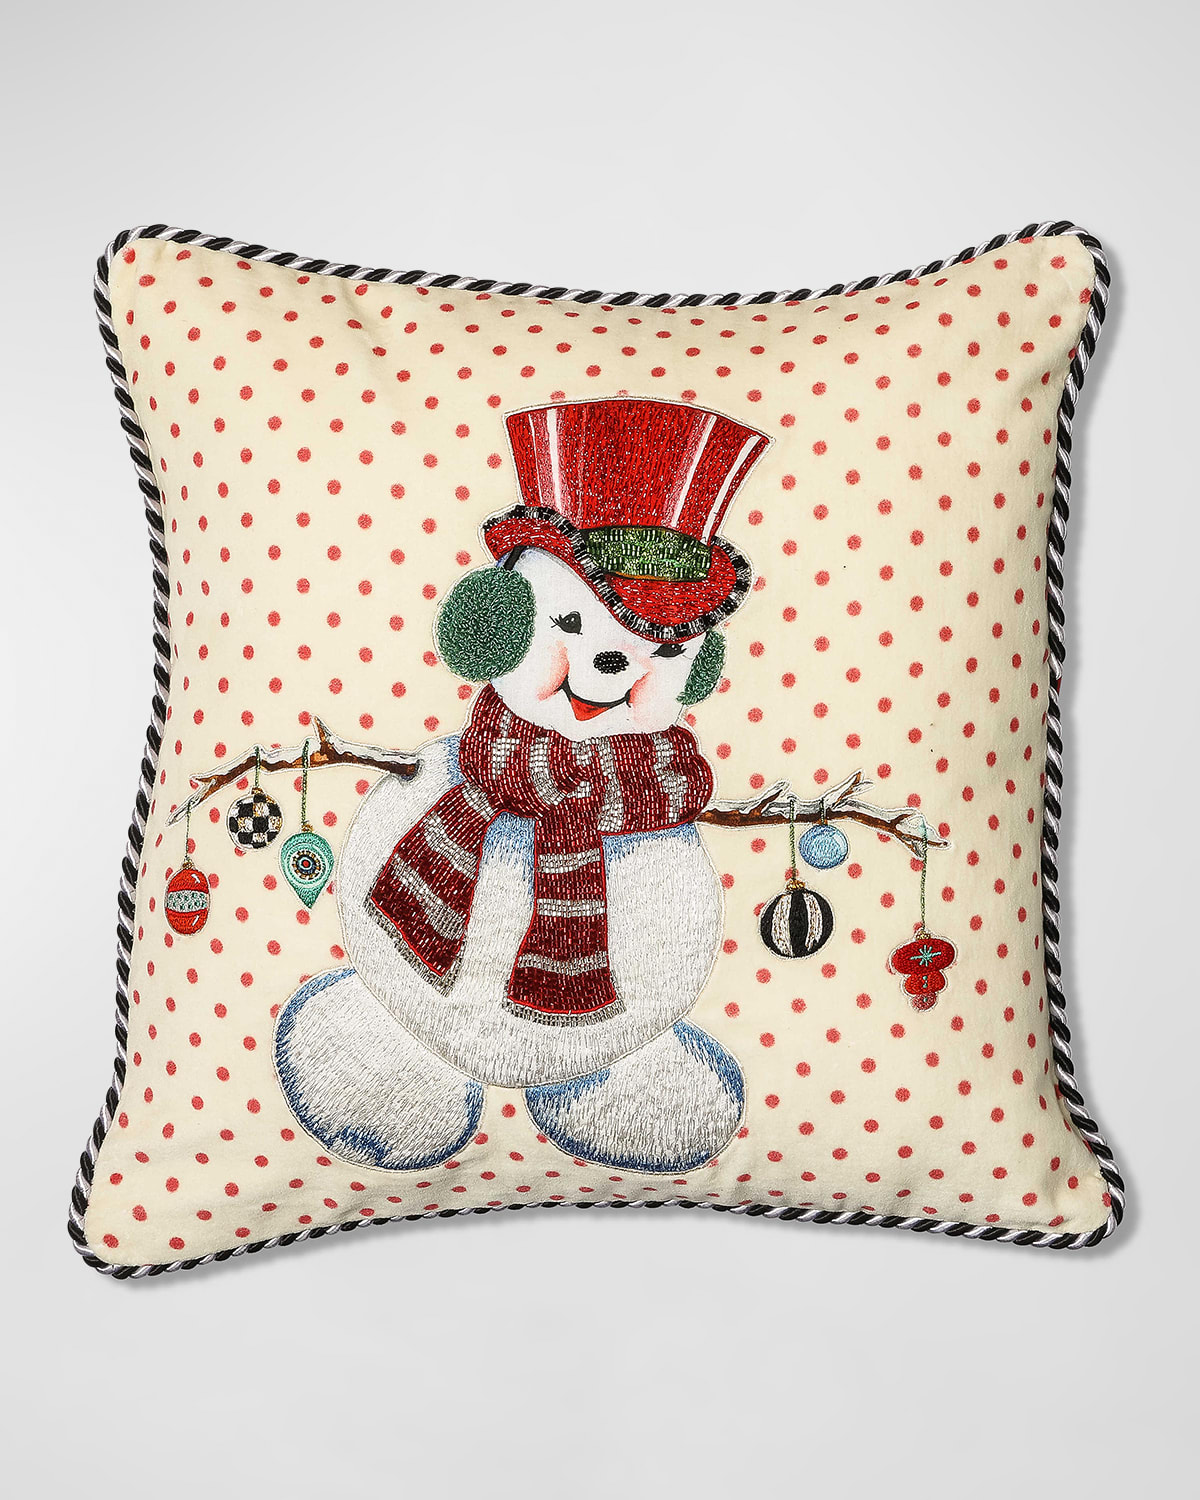 Mackenzie-childs Kitschy Snowman Pillow